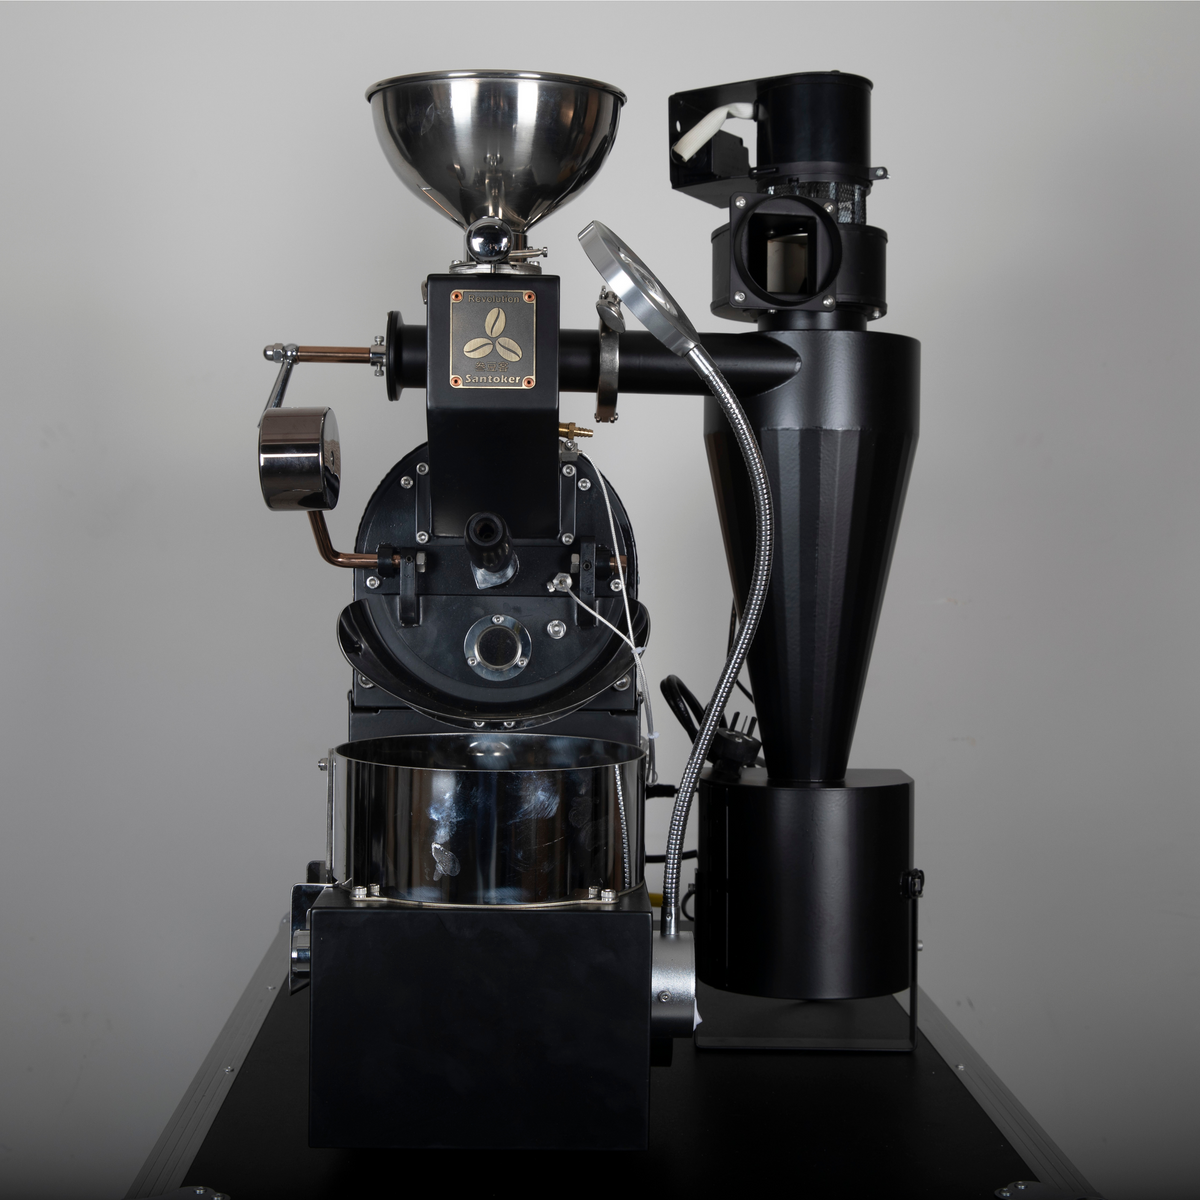 Santoker R300 咖啡烘焙机 - 500g/批